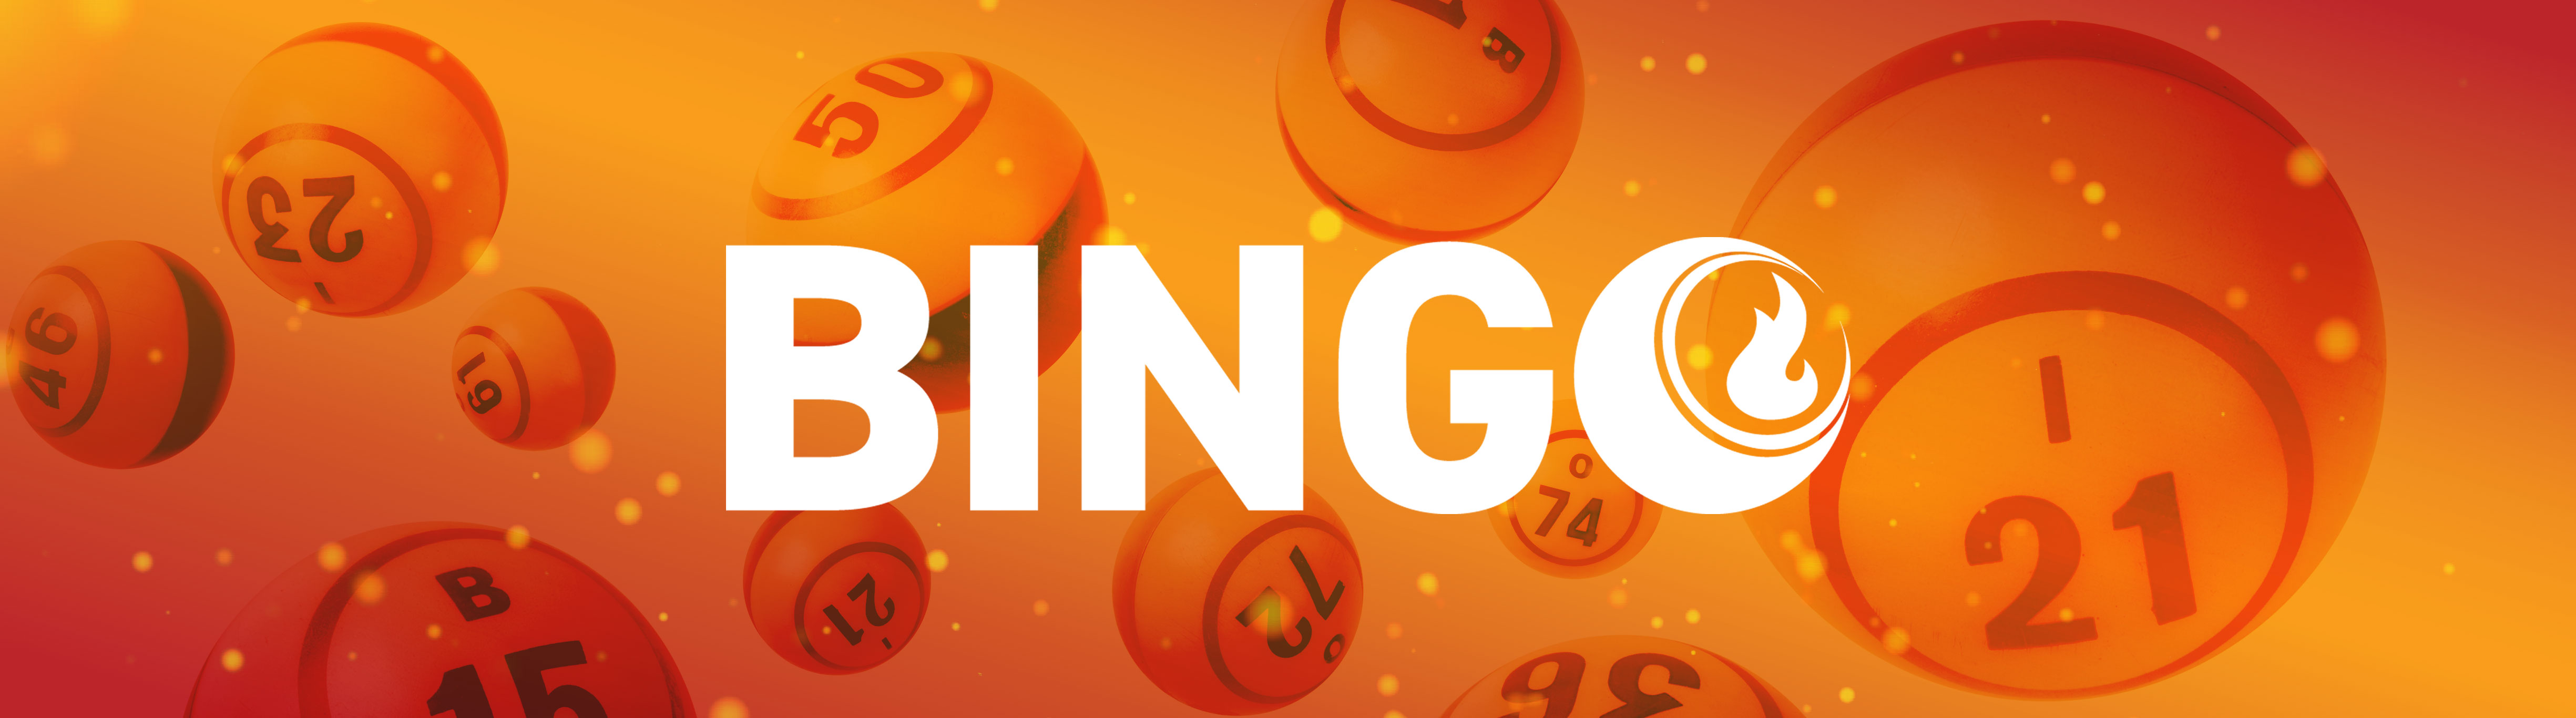 bingo potawatomi casino